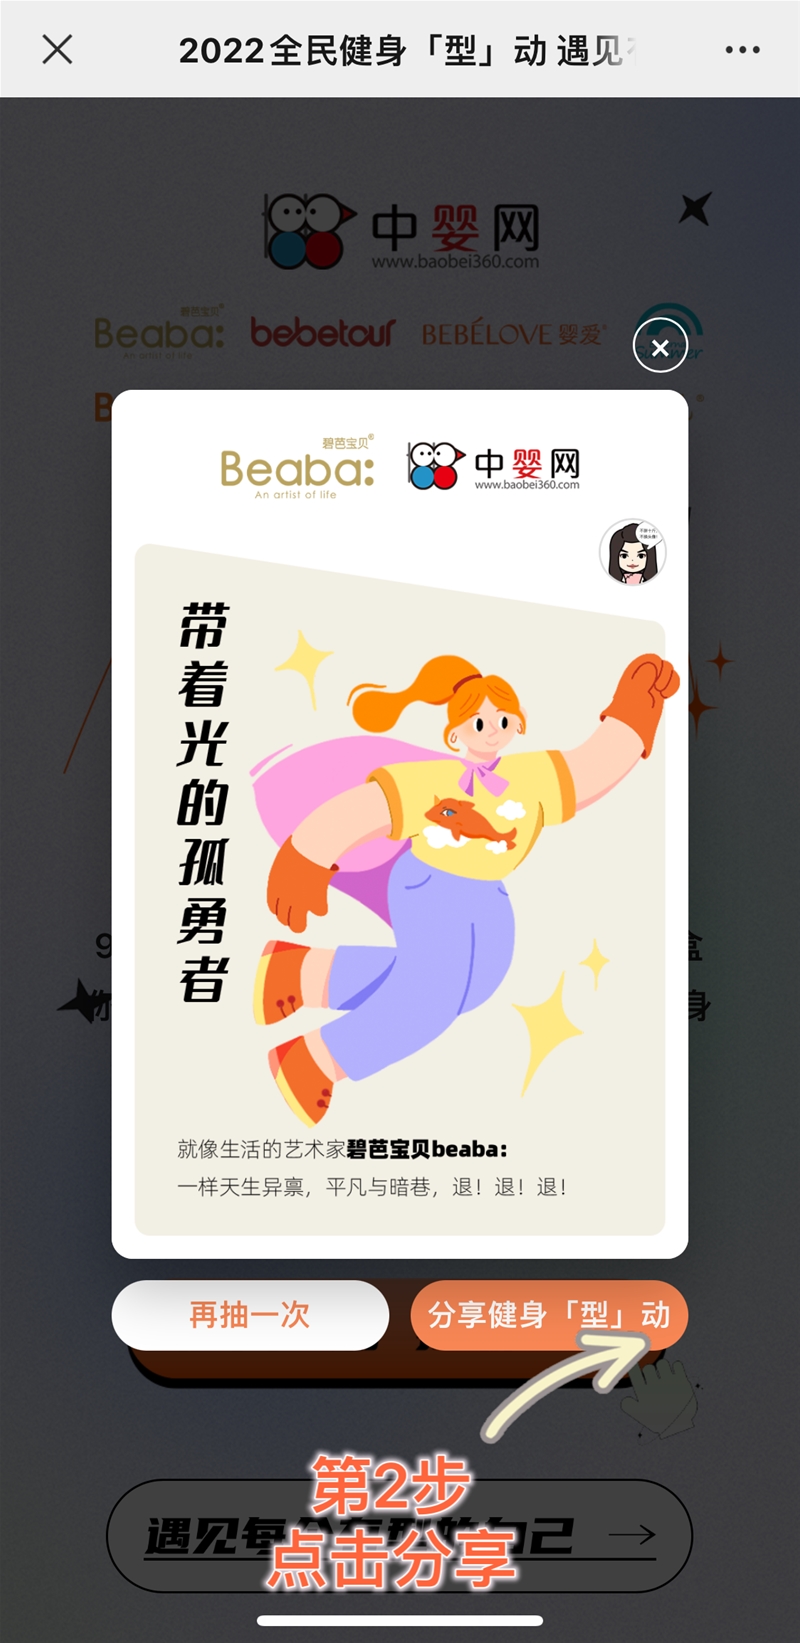 2022年全民健身日 | 中婴网8月盲盒抽奖活动攻略